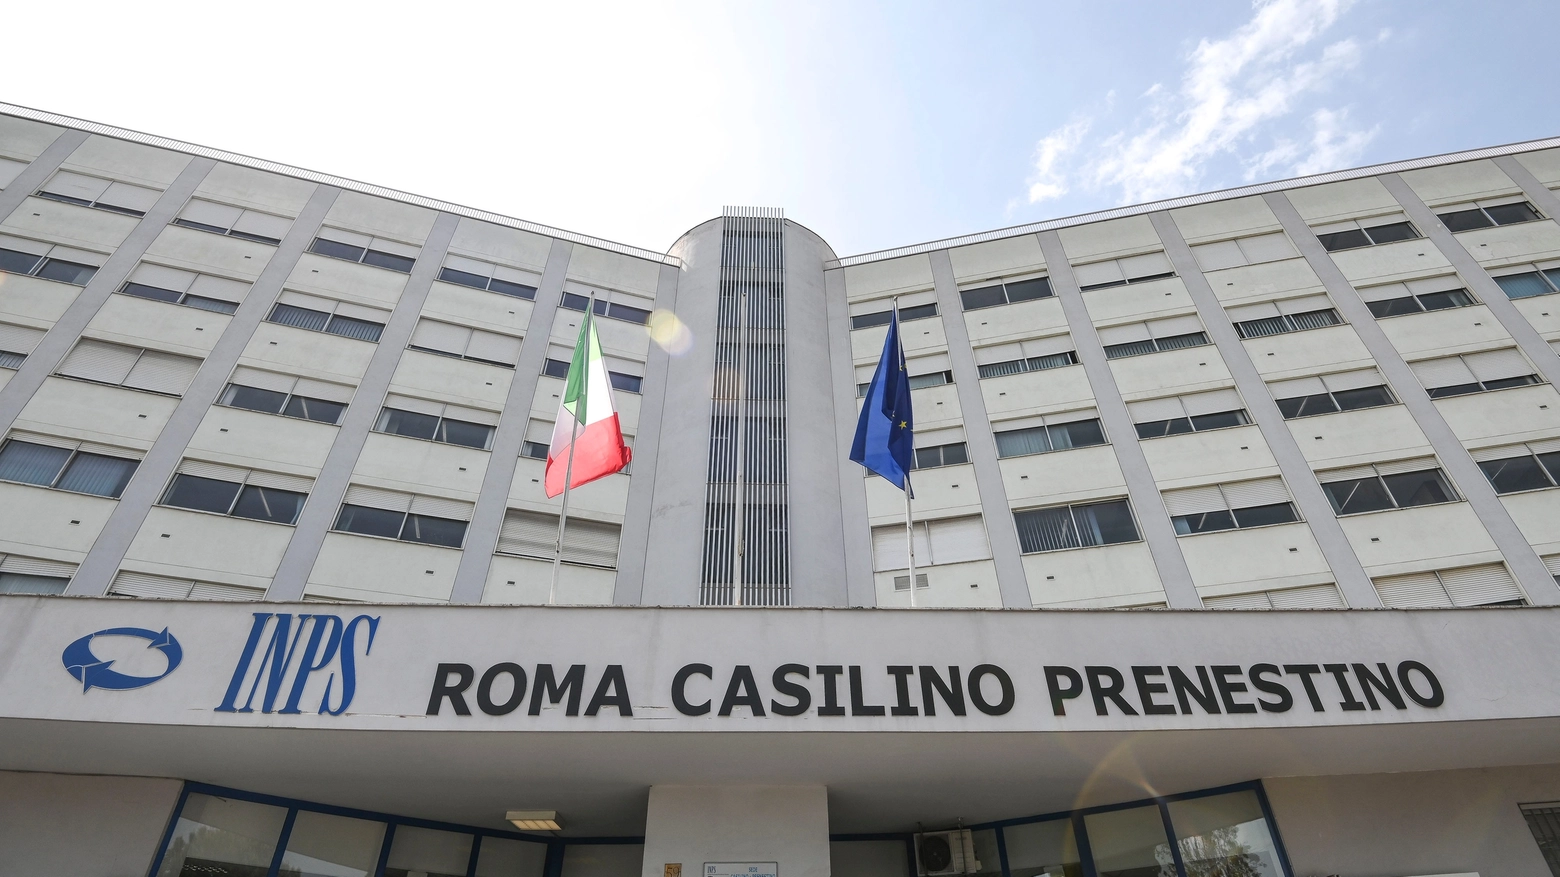 La sede dell'Inps Roma Casilino Prenestino (Imagoeconomica)